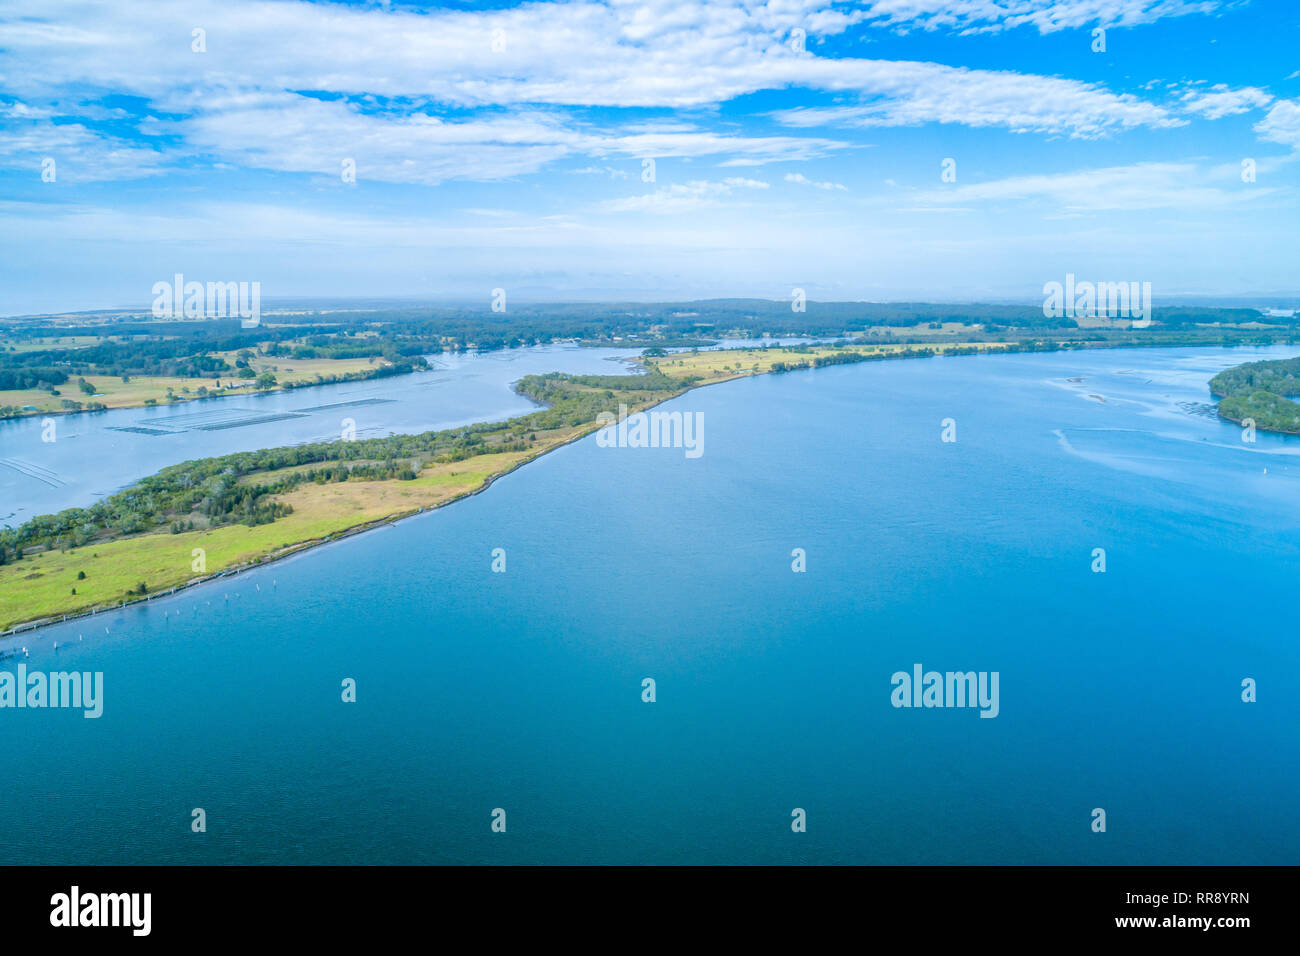 Manning River und die Landschaft - Luftbild Landschaft mit Kopie Raum Stockfoto